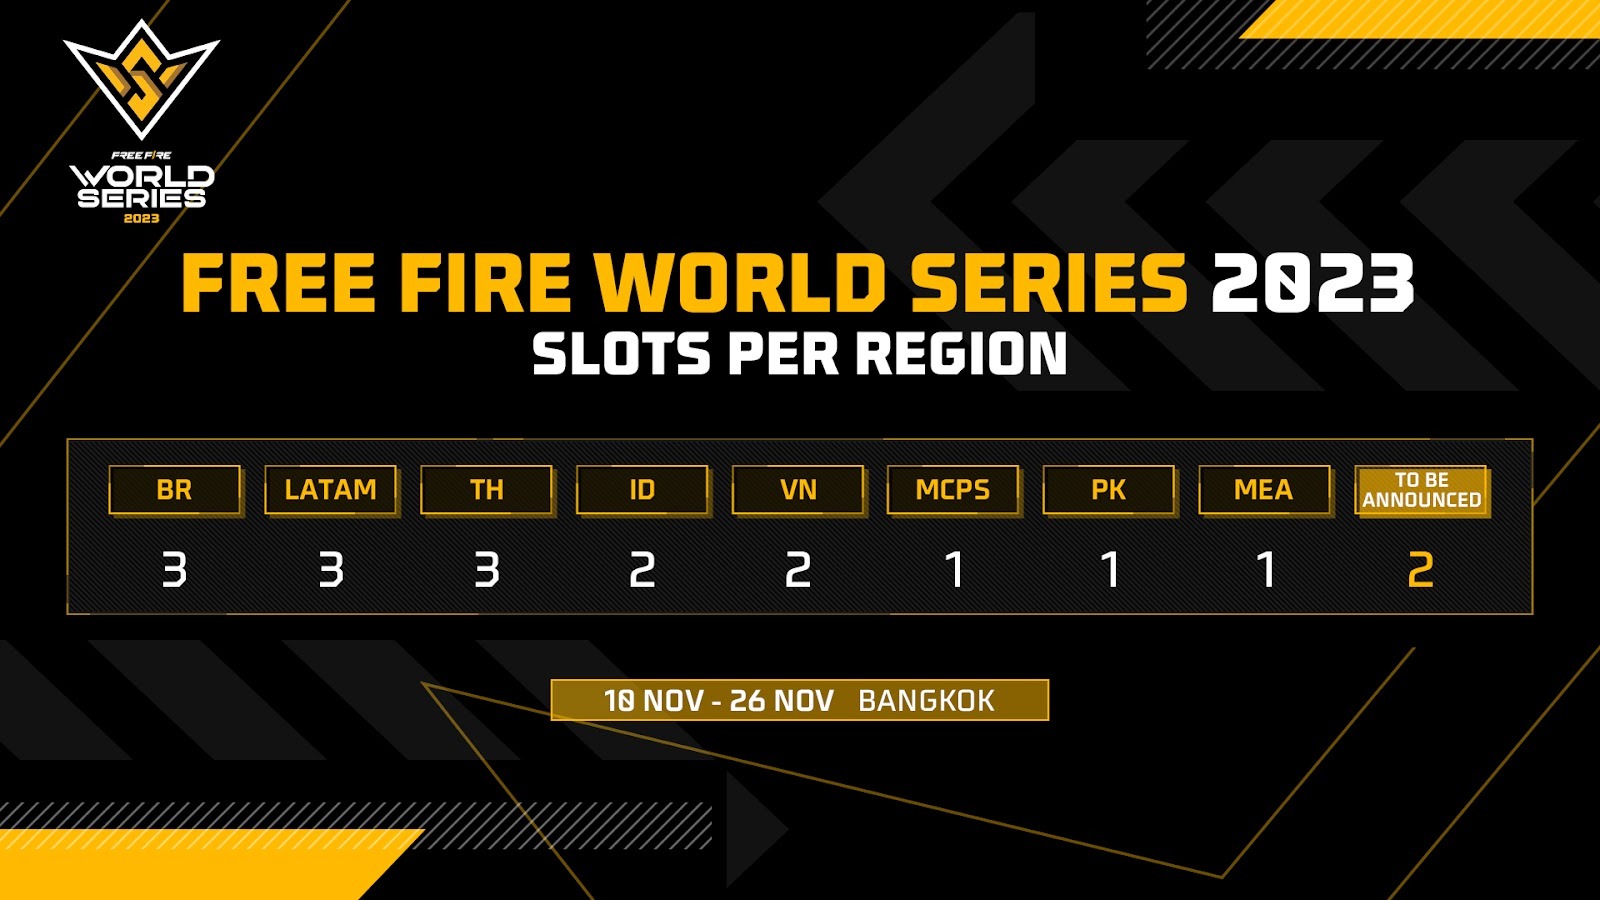 Mundial de Free Fire, FFWS 2023: 18 Times disputam o Título em Bangkok